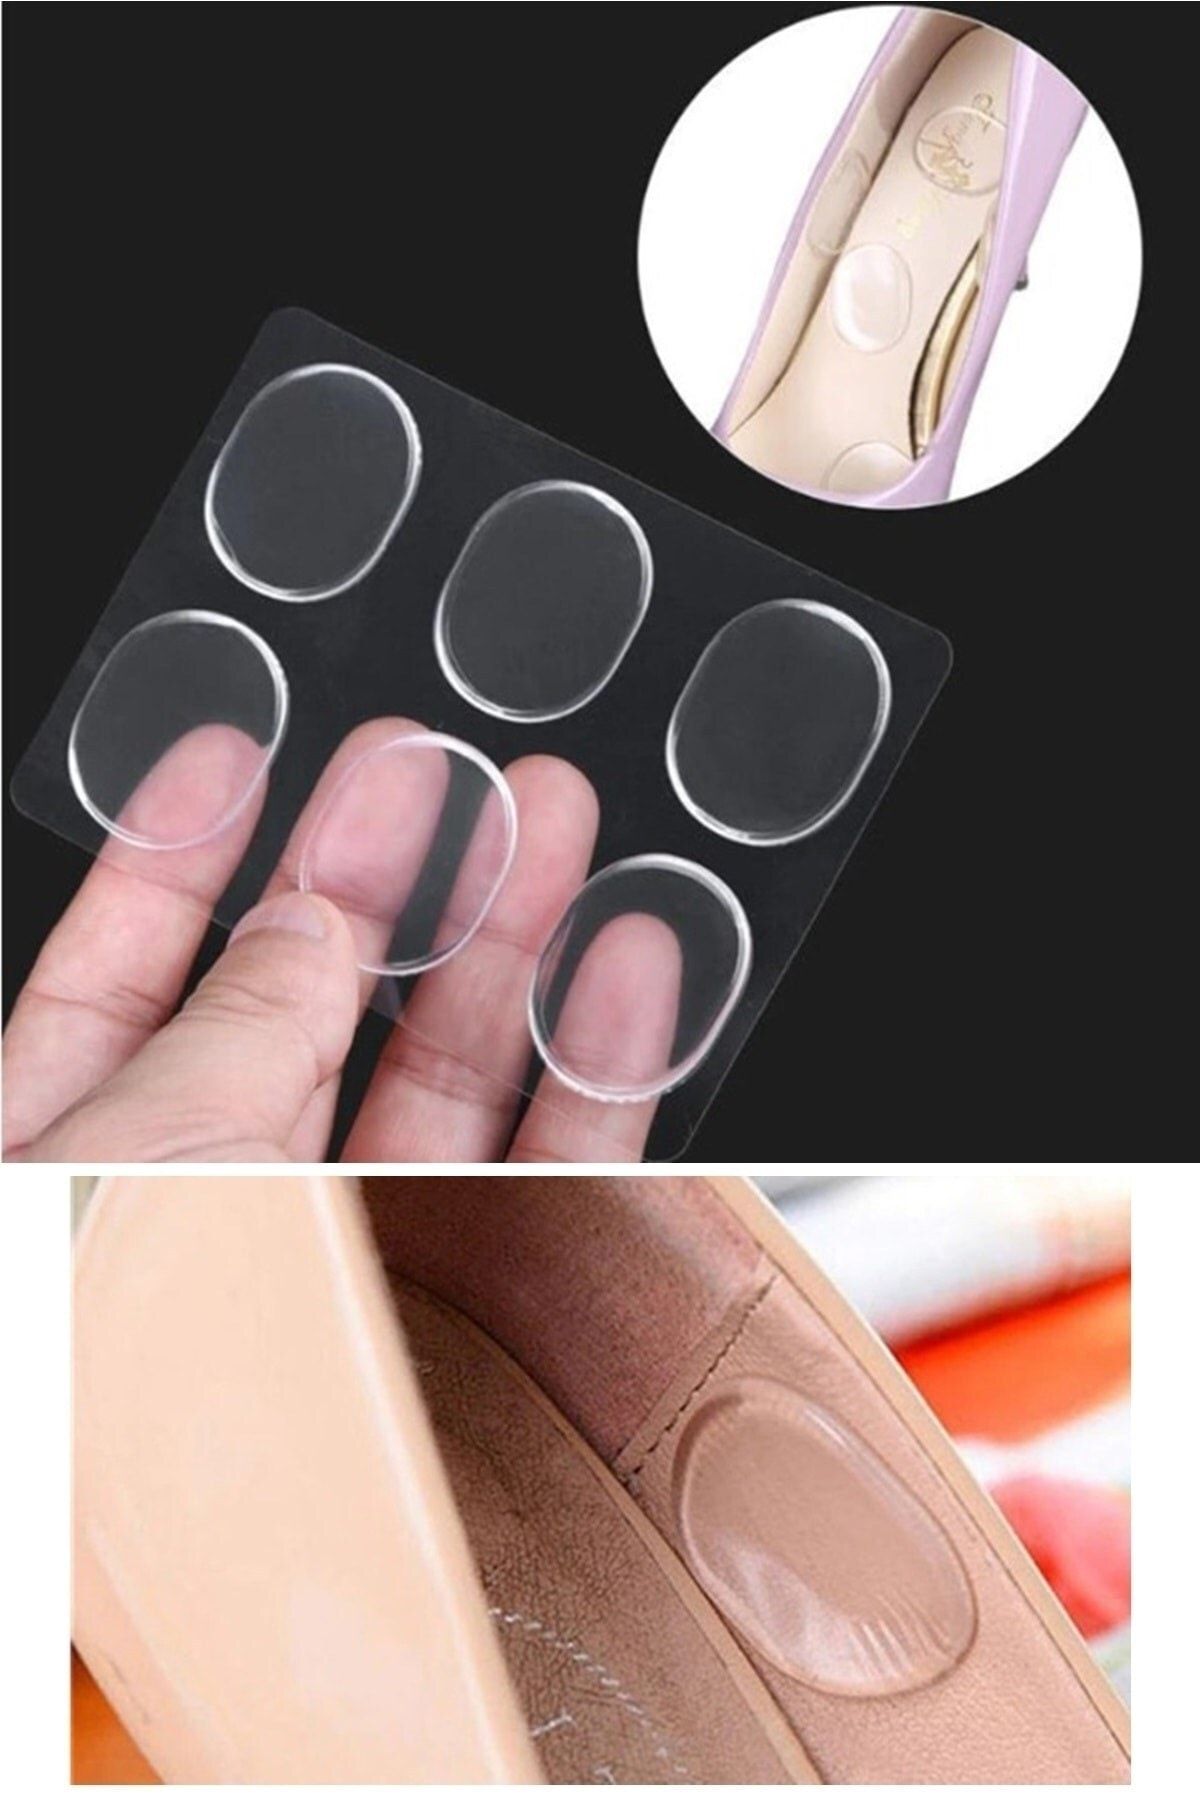 Neler Geldi Neler 6 Adet Silikon Jel Ayakkabı Vurma Önleyici Topuk Vurma Önleyici Ped Topuk Dikeni Nasır Pedi